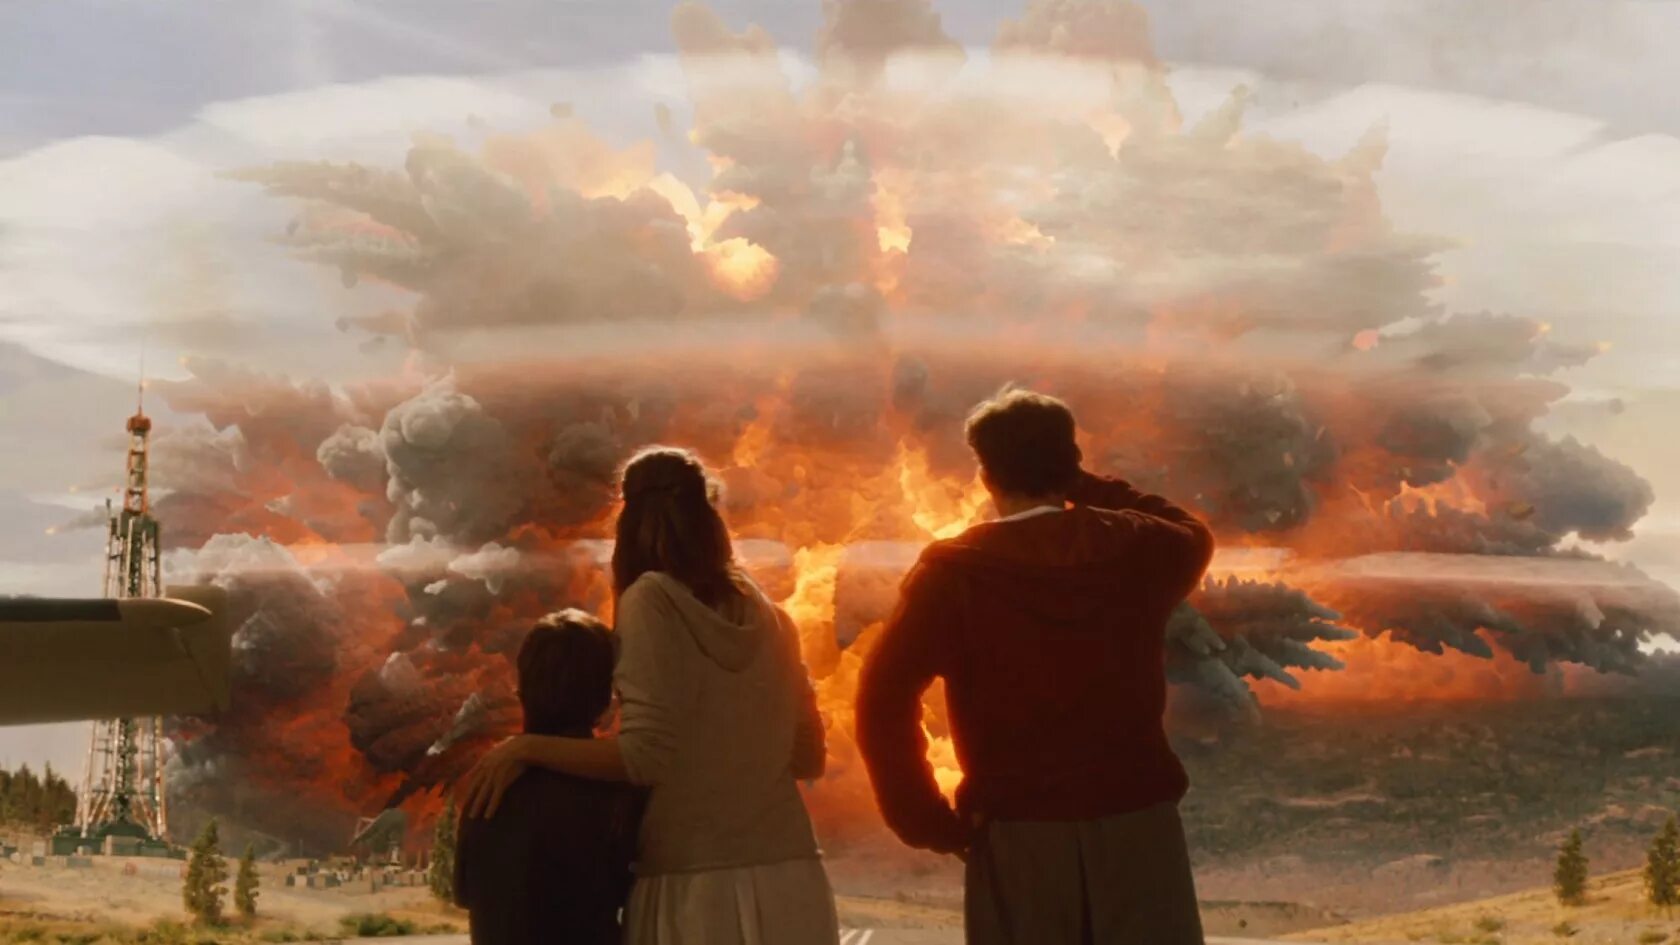 Йеллоустоун извержение вулкана 2012. 2012 Взрыв Йеллоустонского вулкана. Конец света колокольник